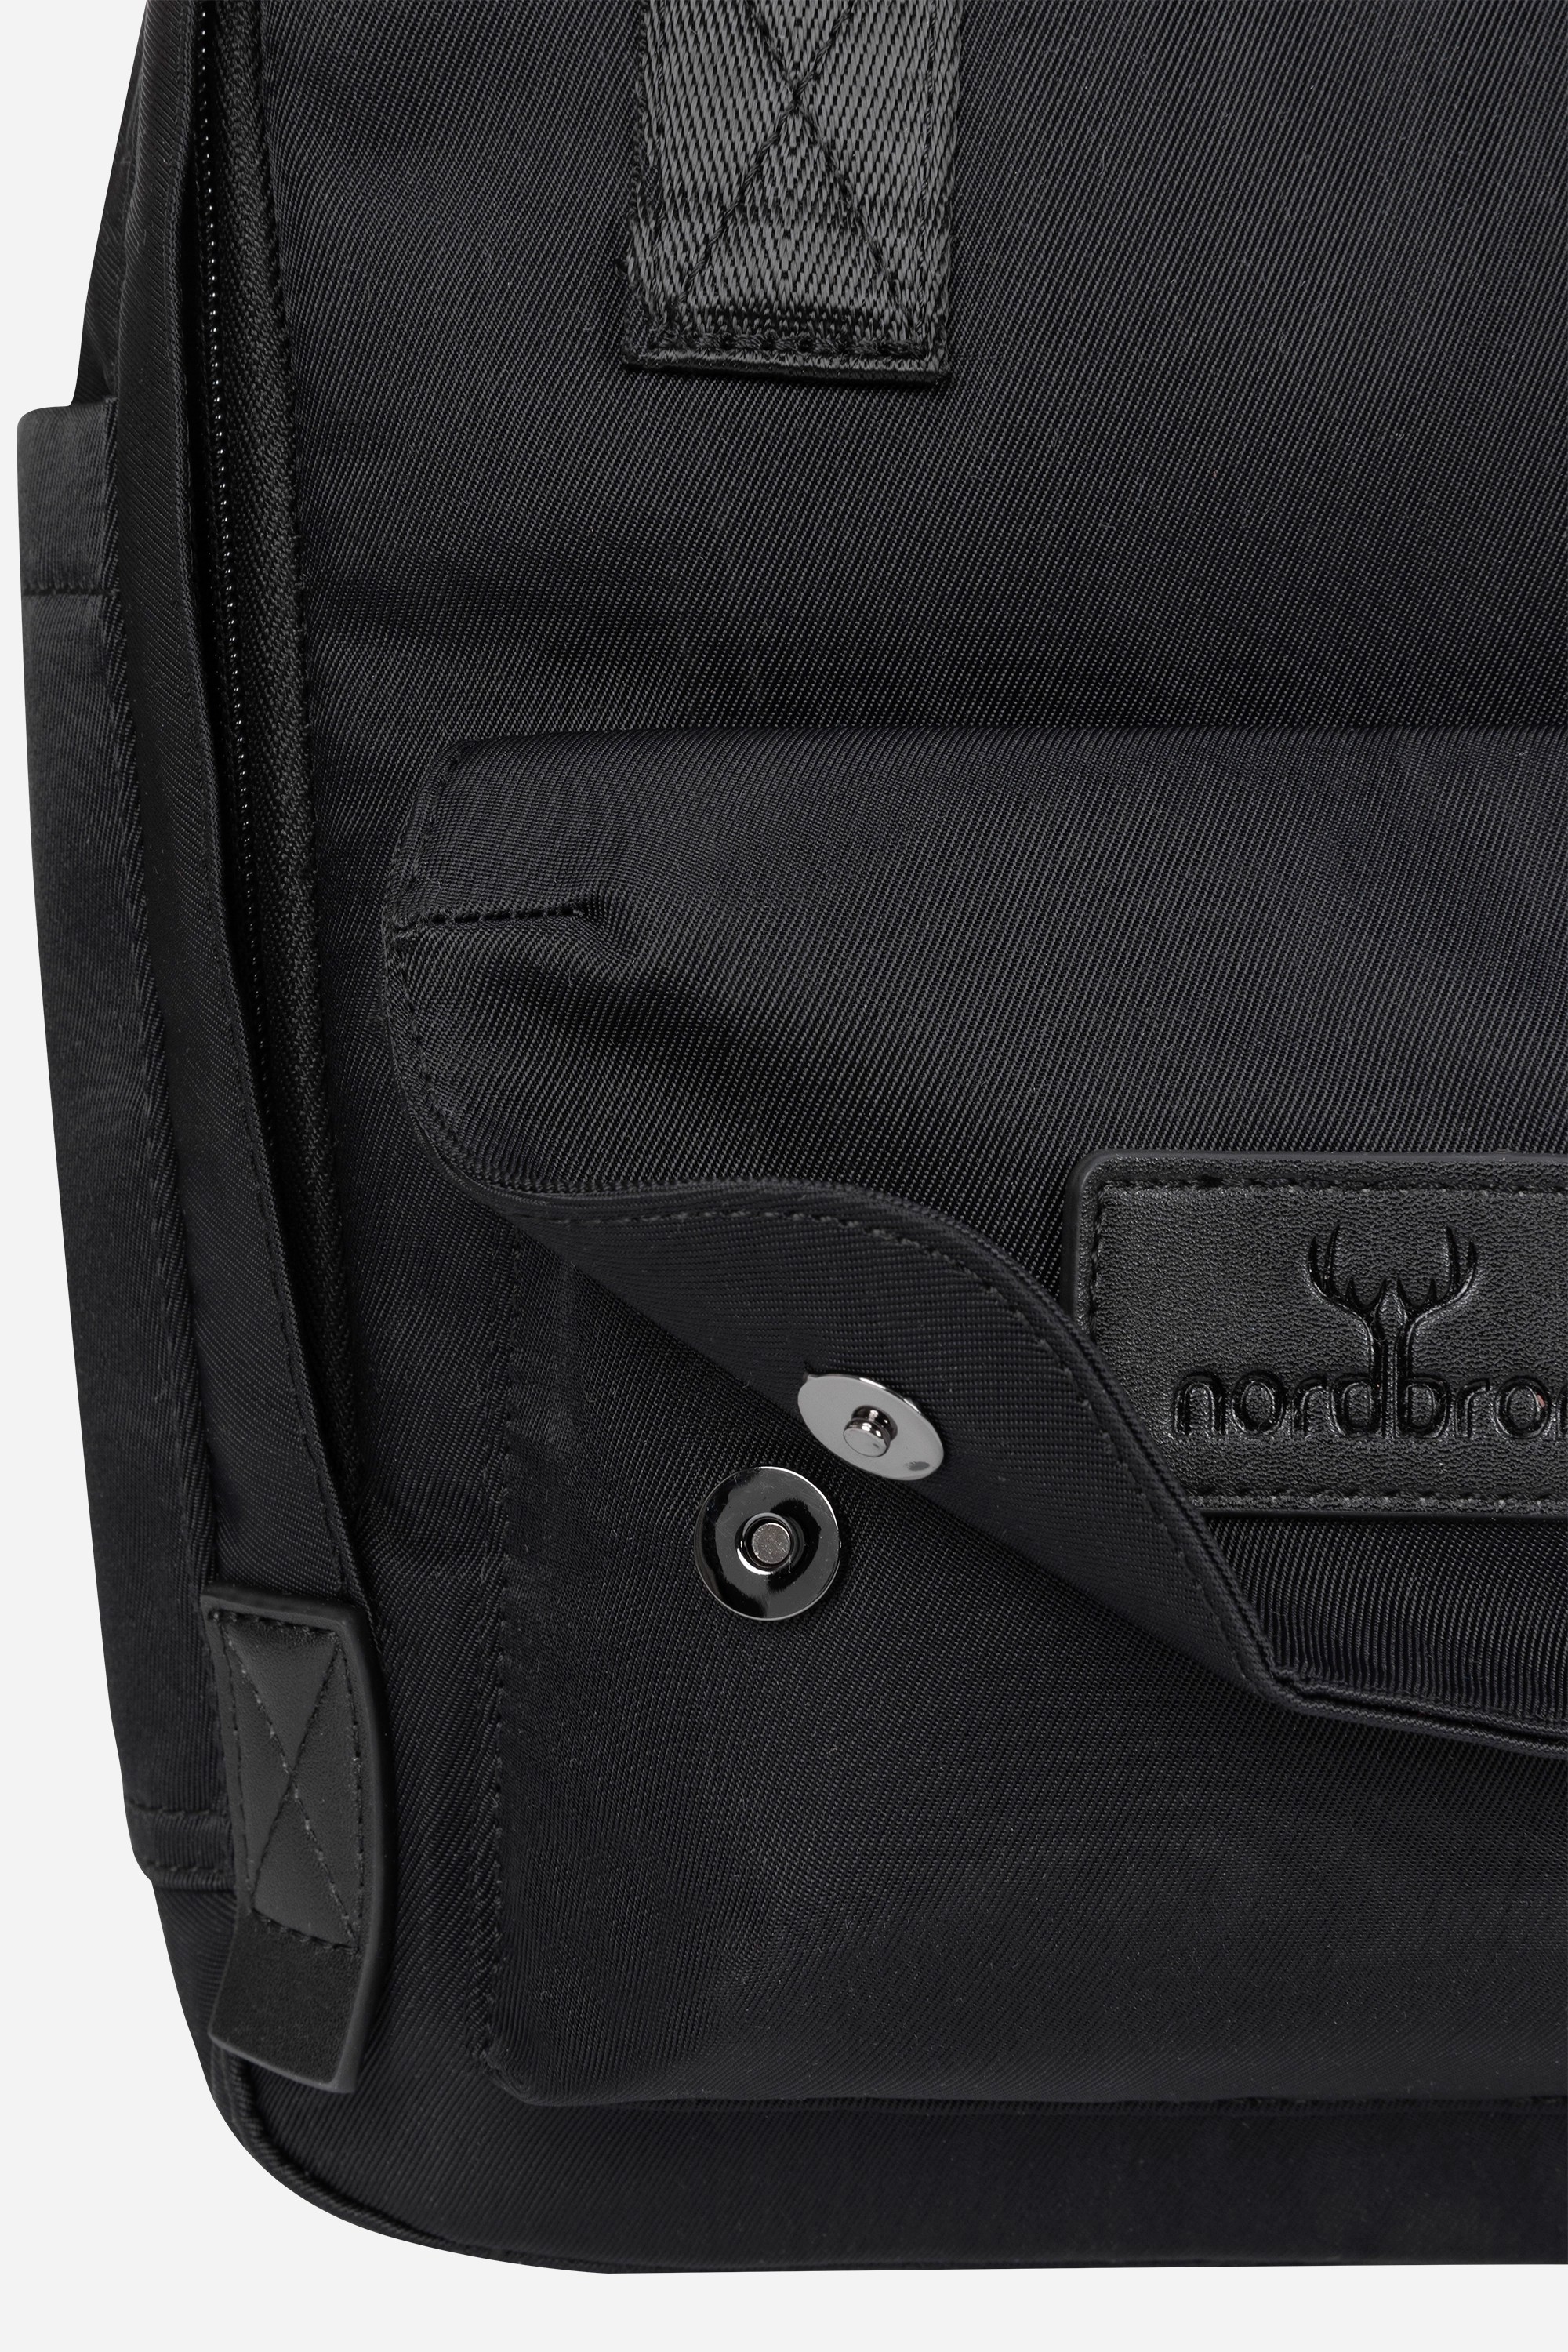 Lucerne Nordbron Mini Backpack